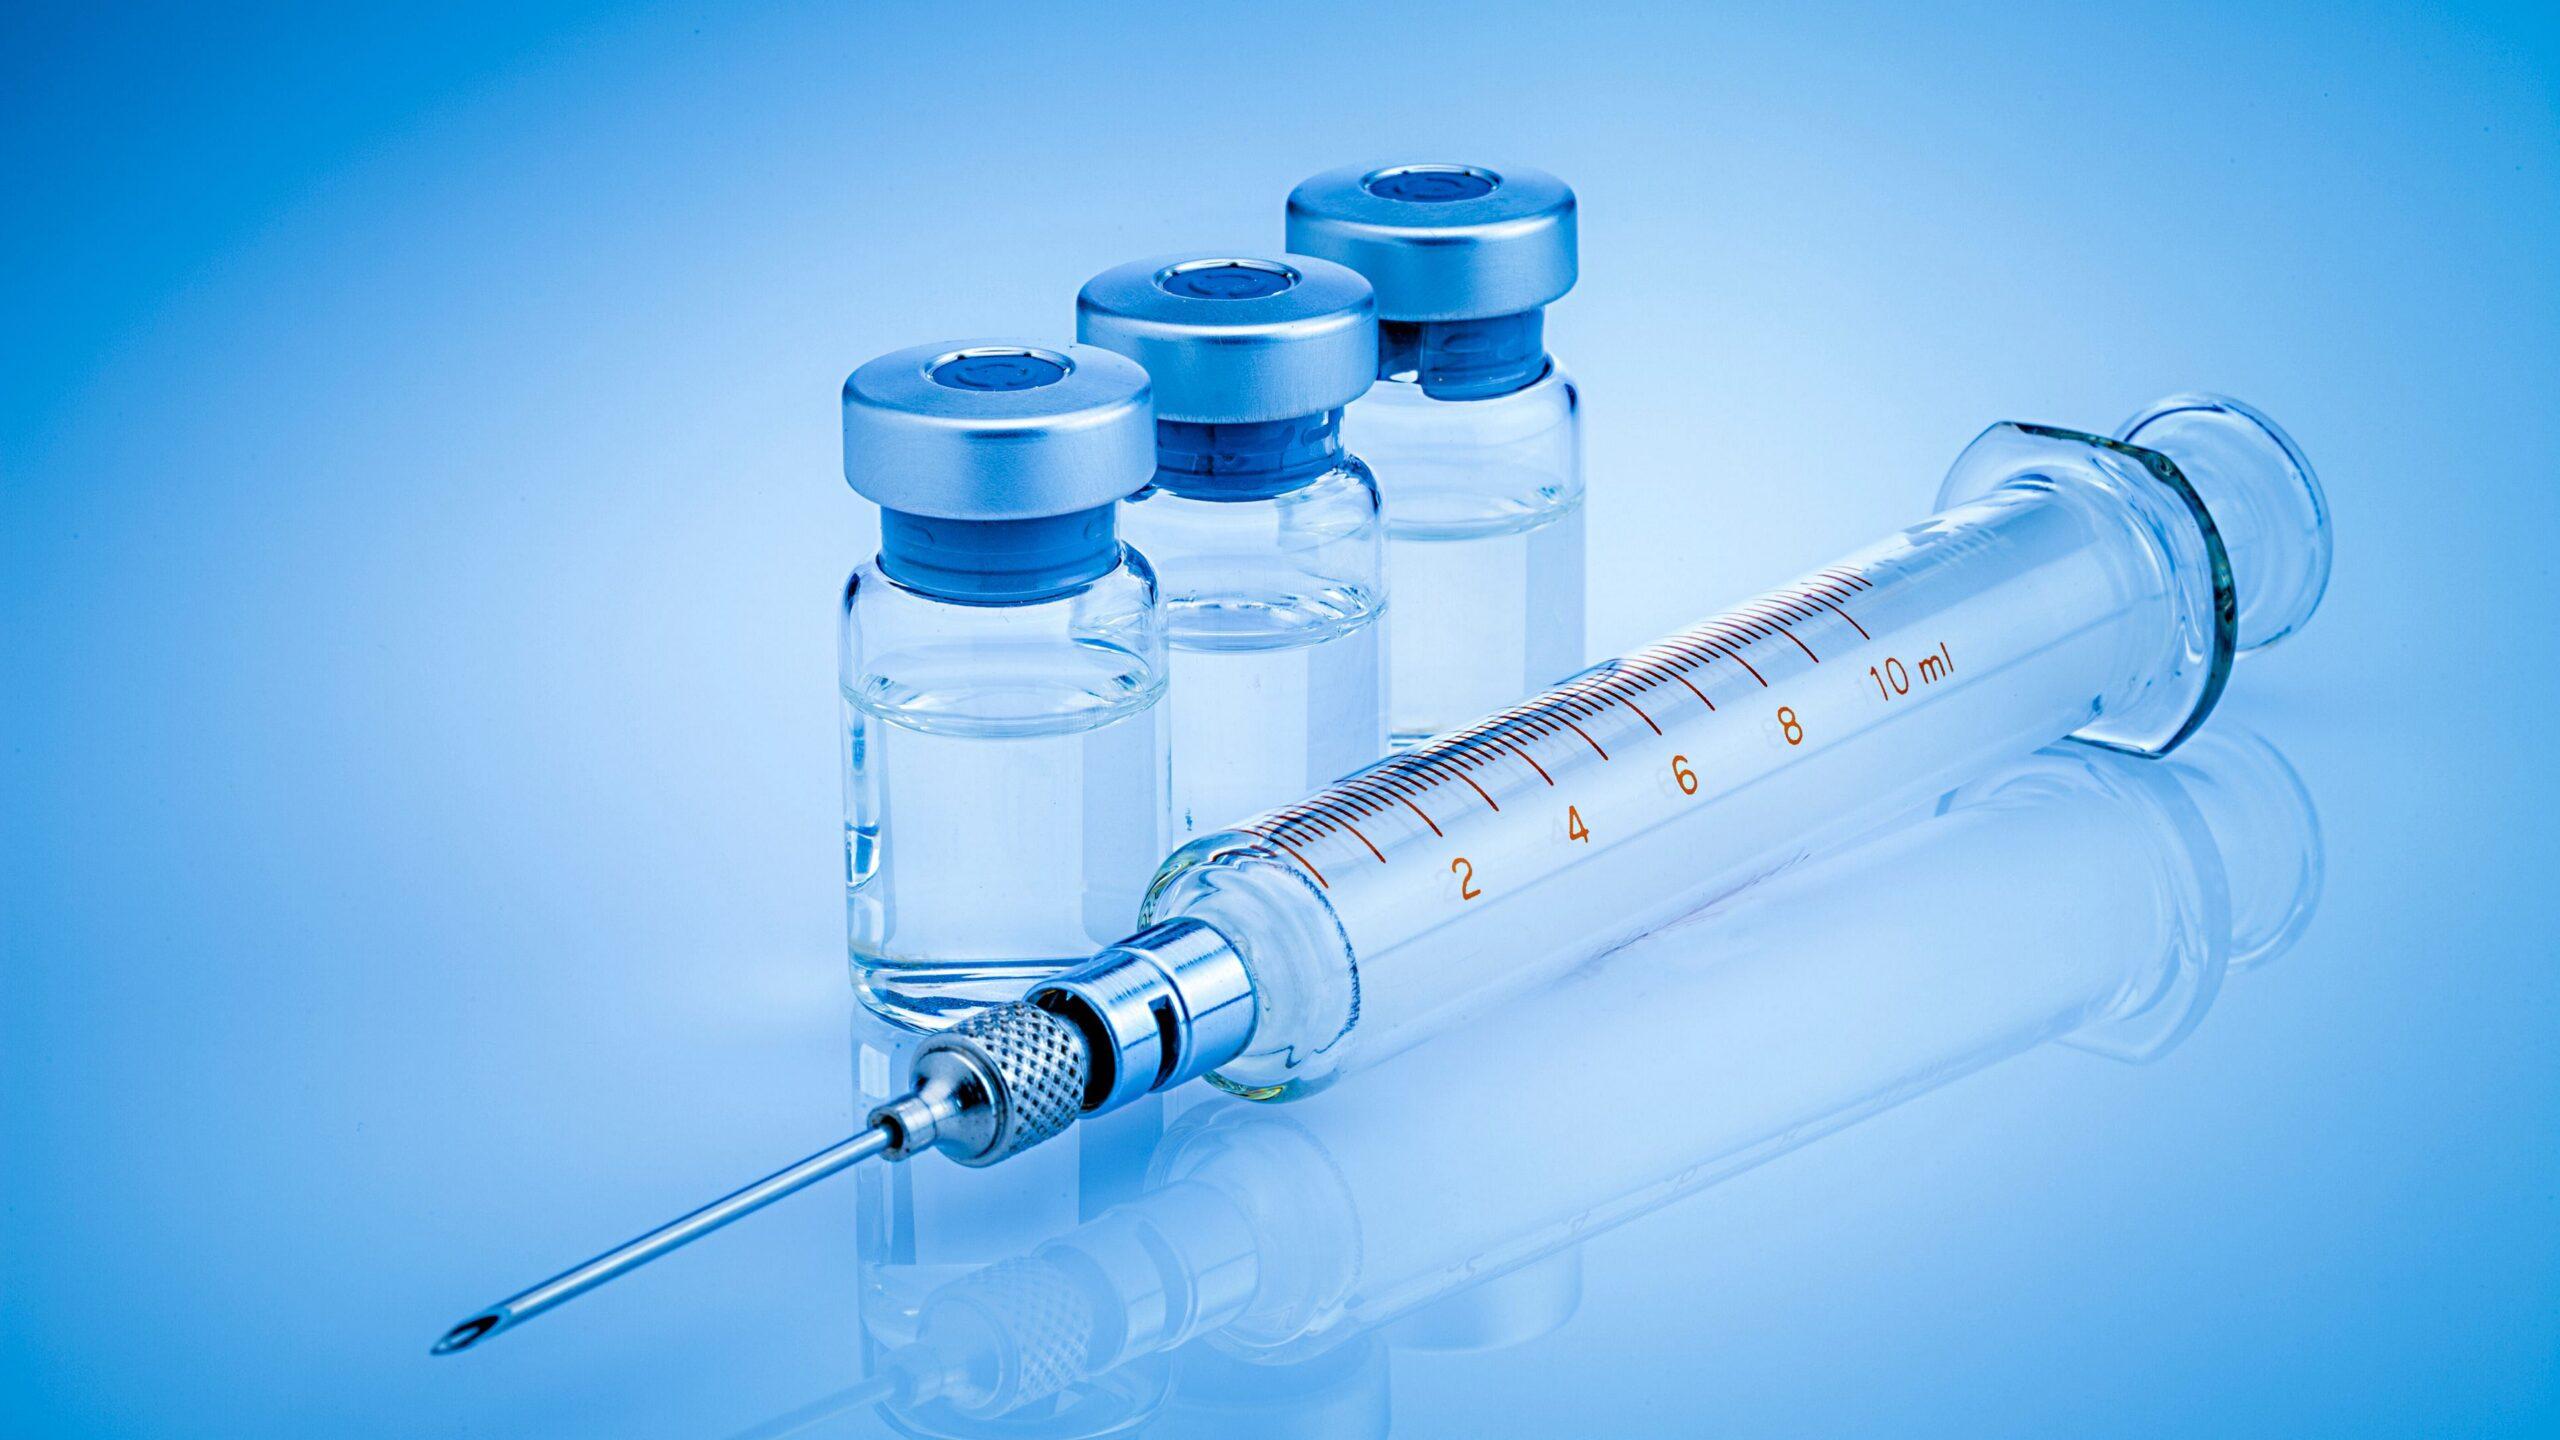 राज्यों के पास मौजूद है वैक्सीन की दो करोड़ से ज्यादा खुराकें : केंद्र